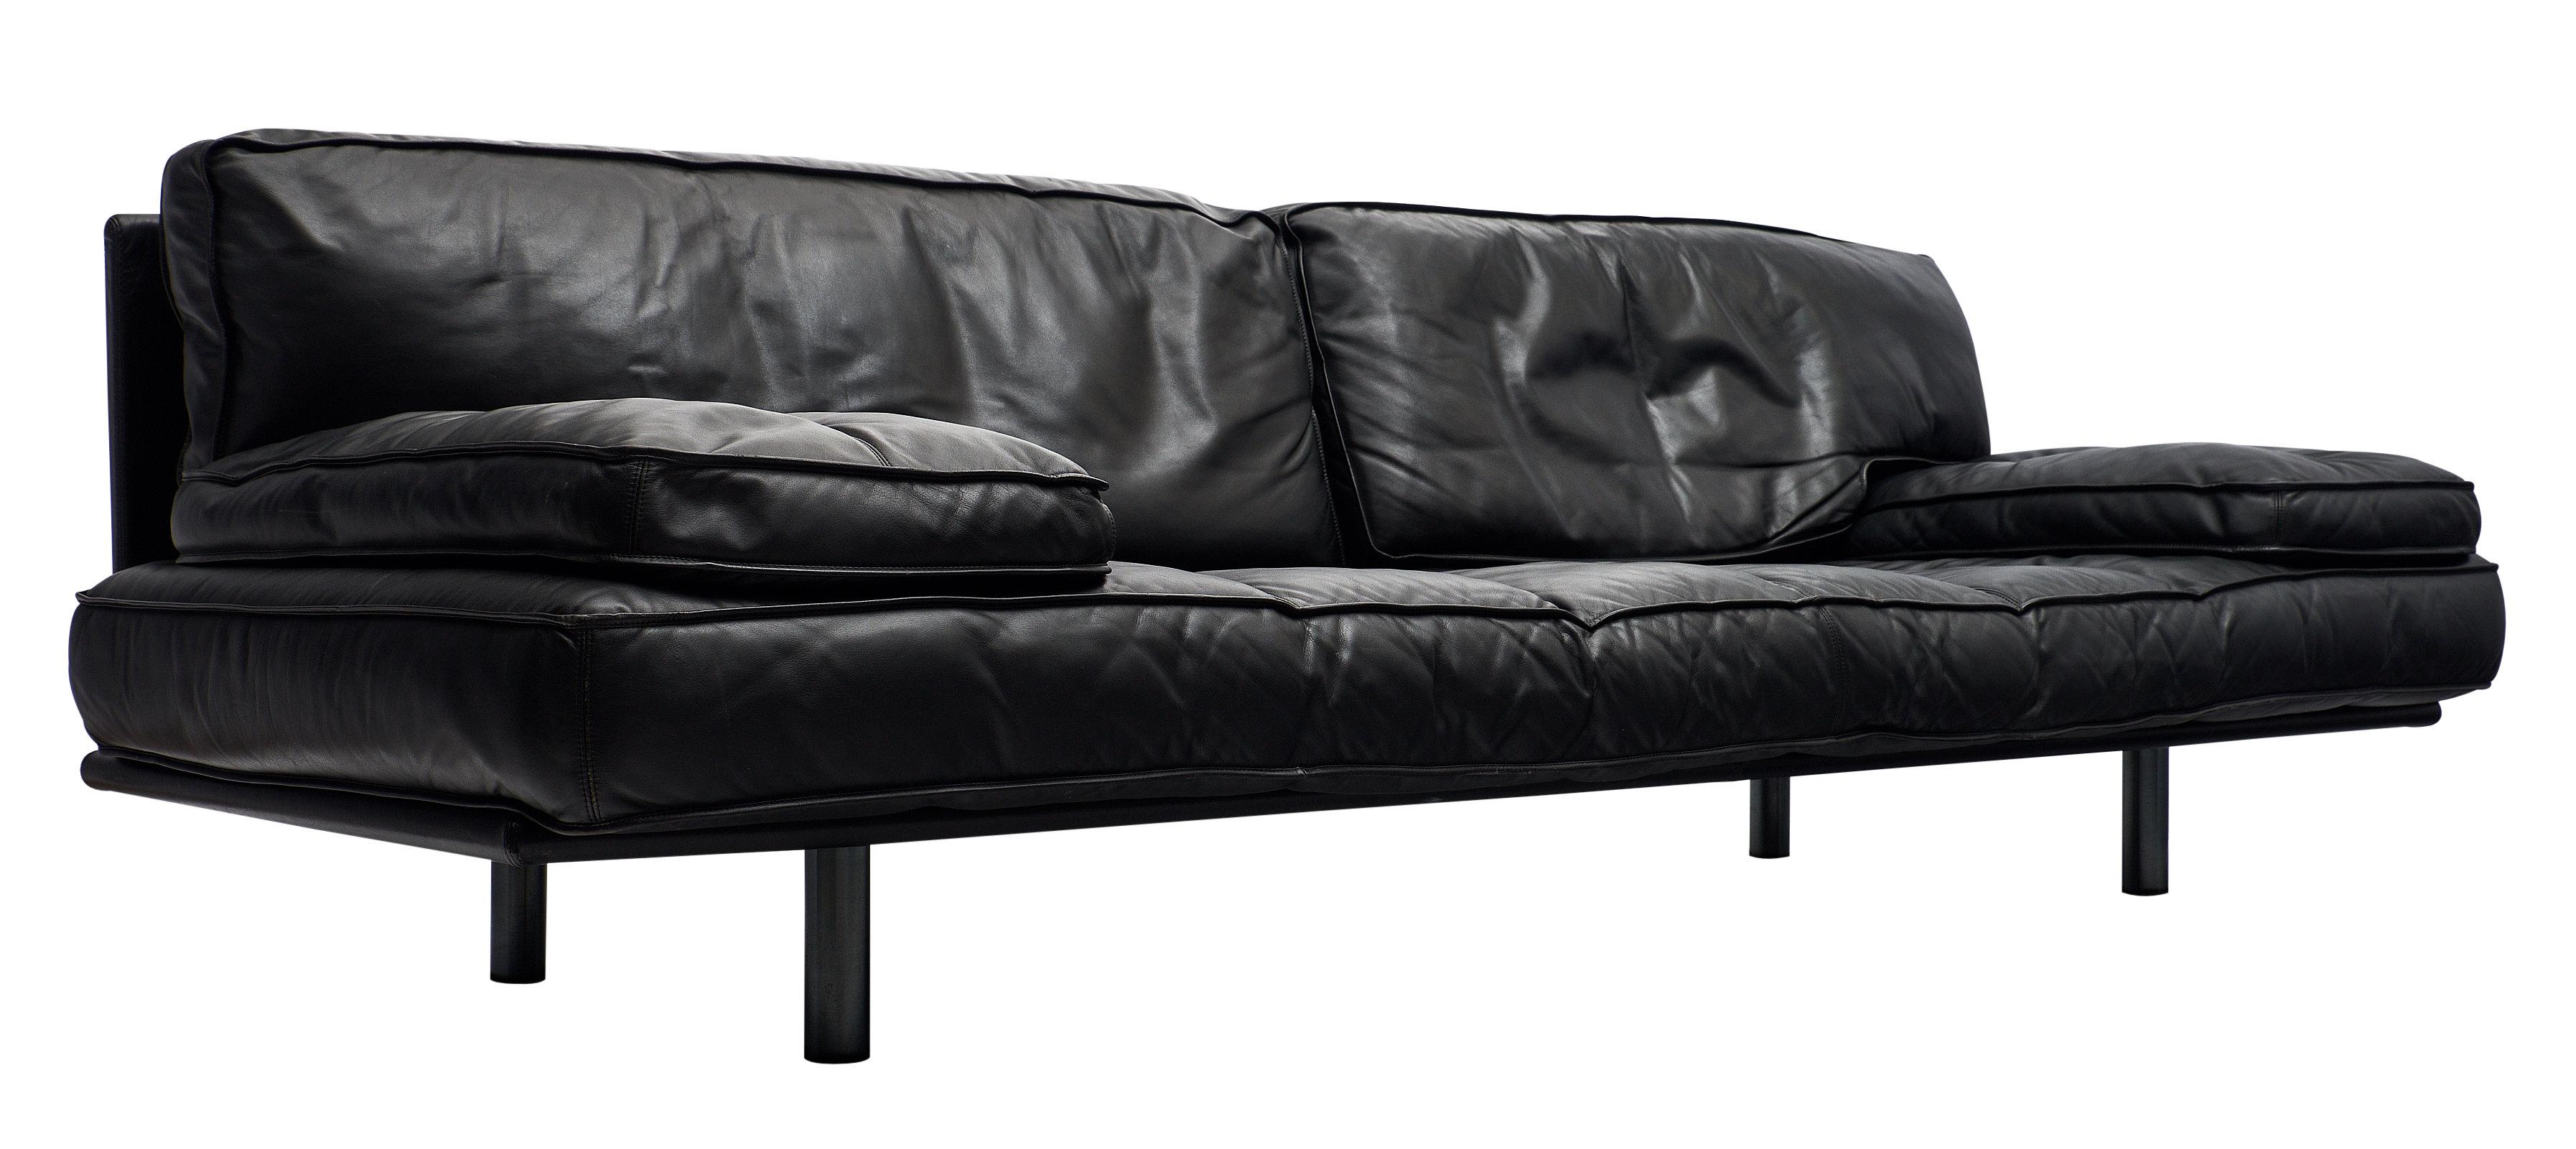 Italian Leather Milano 210 Sofa by Zanotta at 1stDibs